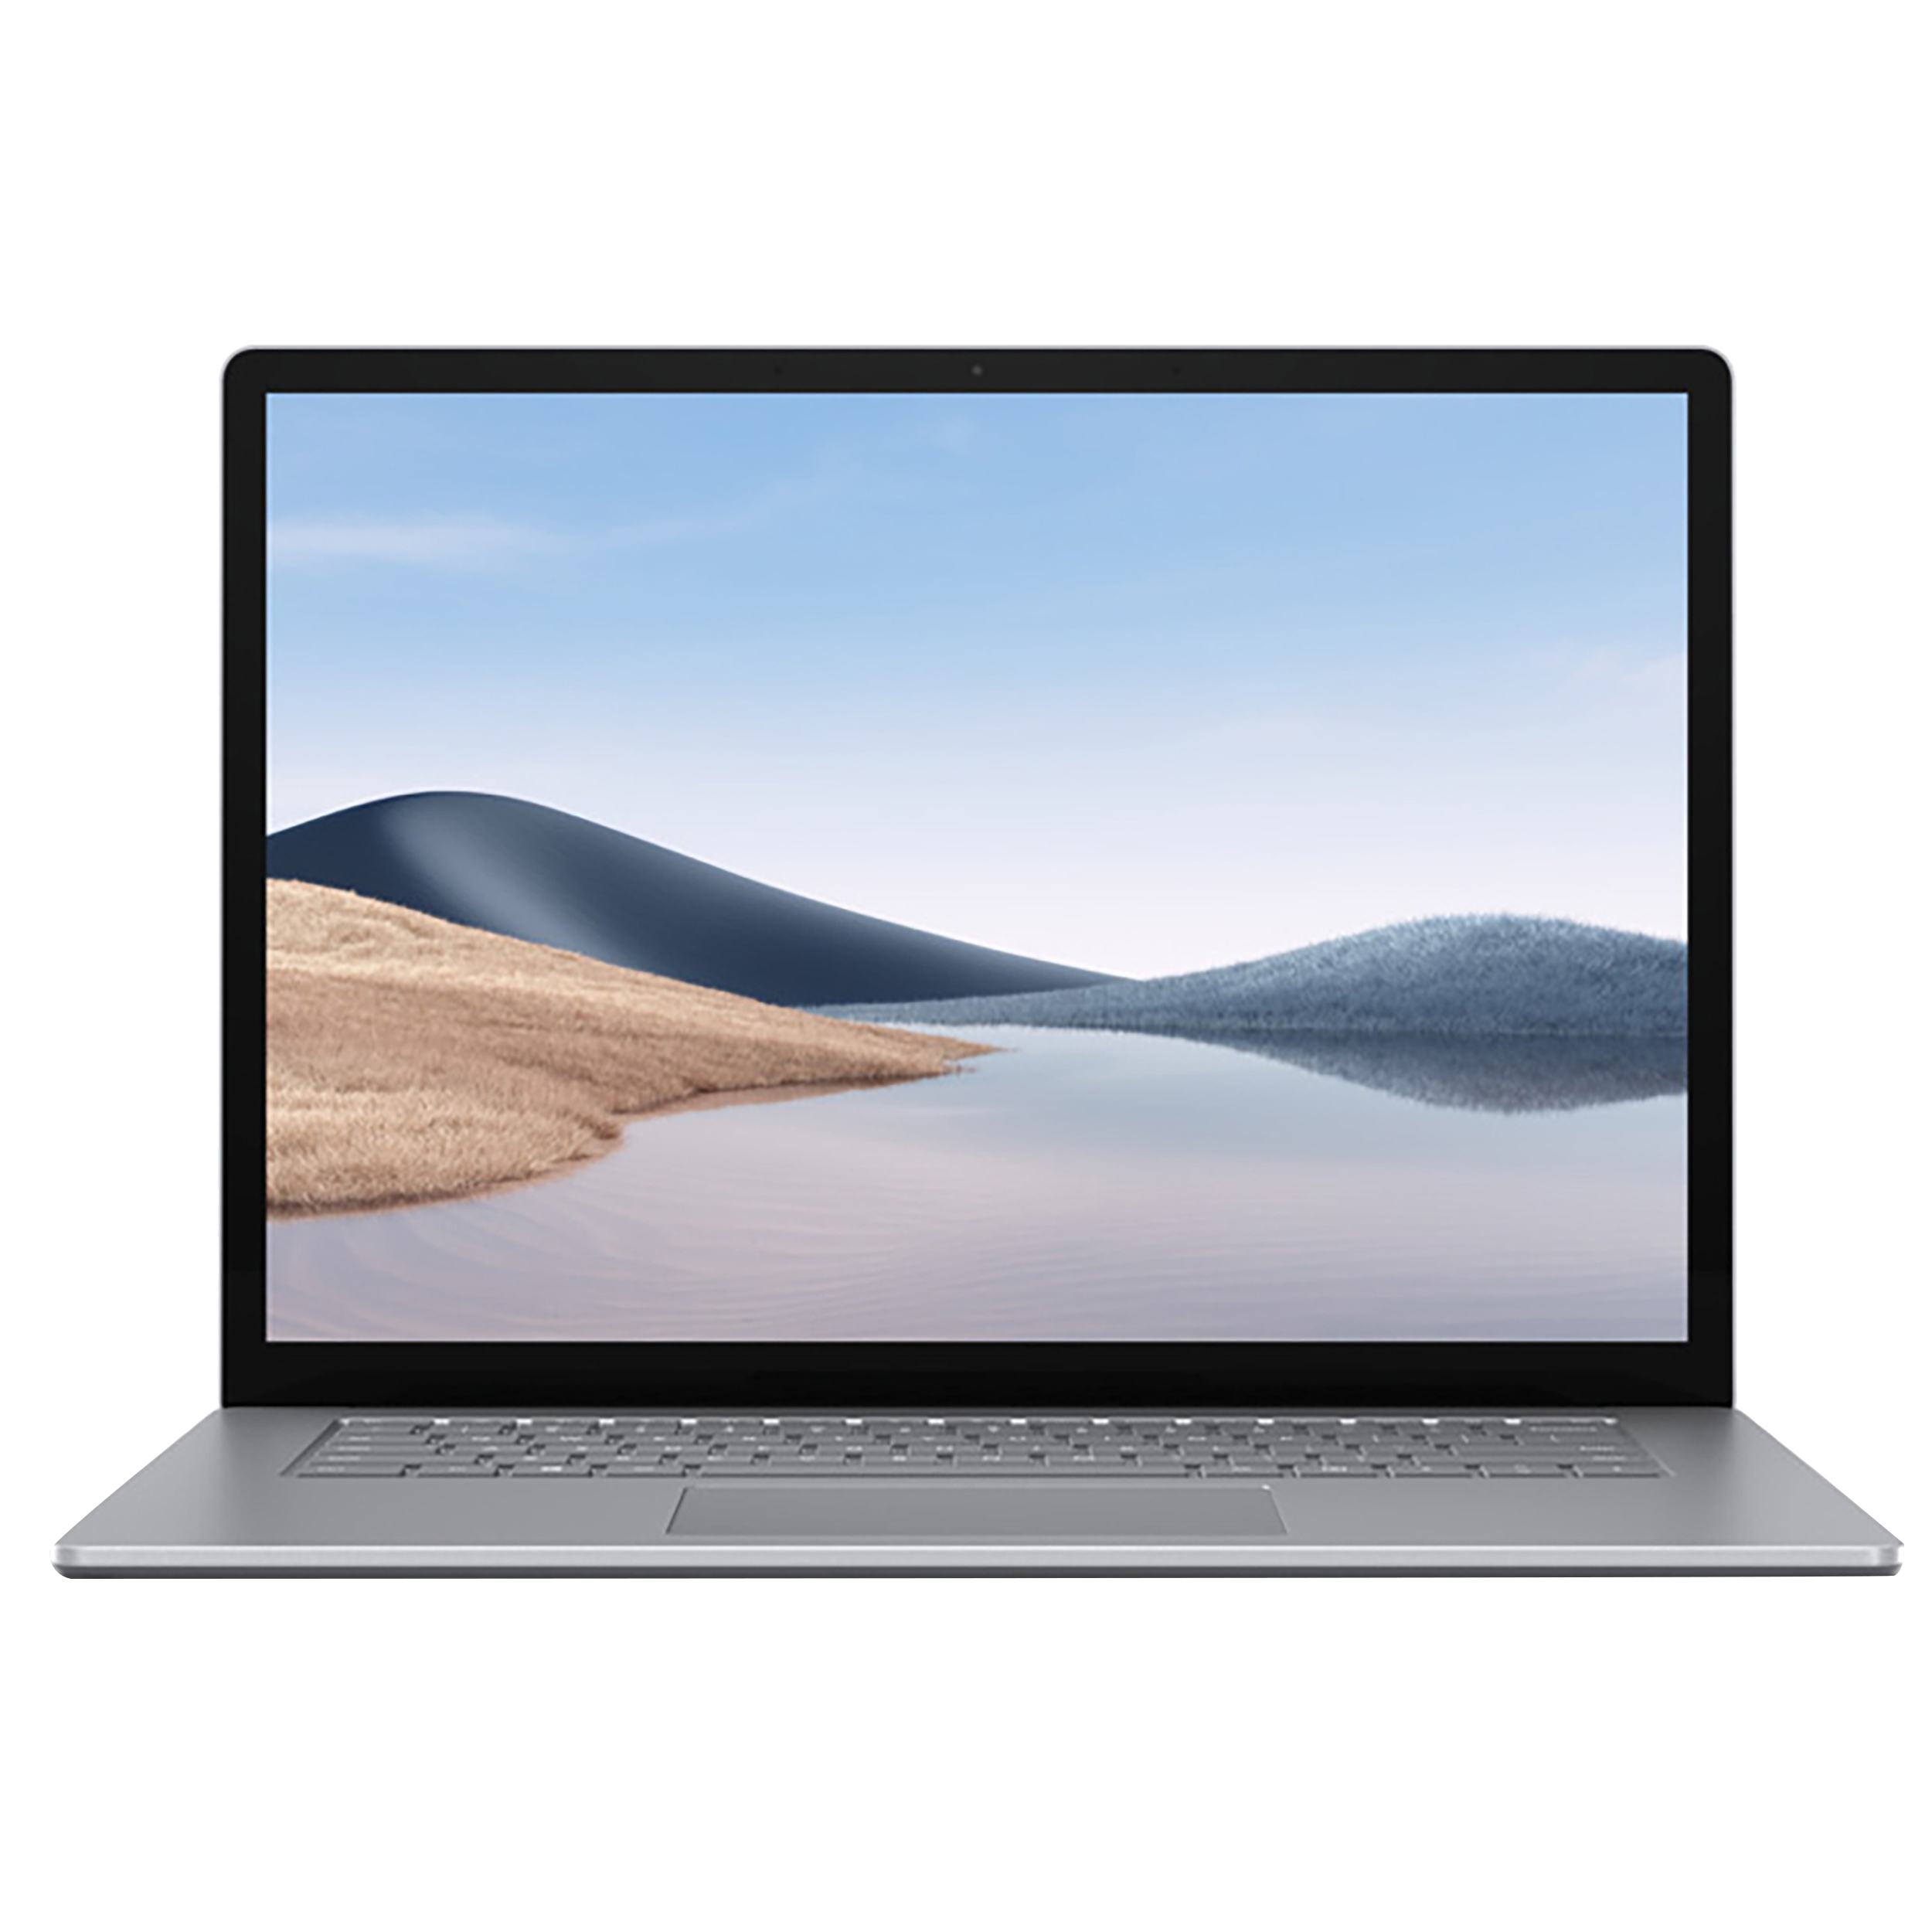 نکته خرید - قیمت روز لپ تاپ 15.0 اینچی مایکروسافت مدل Surface 4 - BB خرید